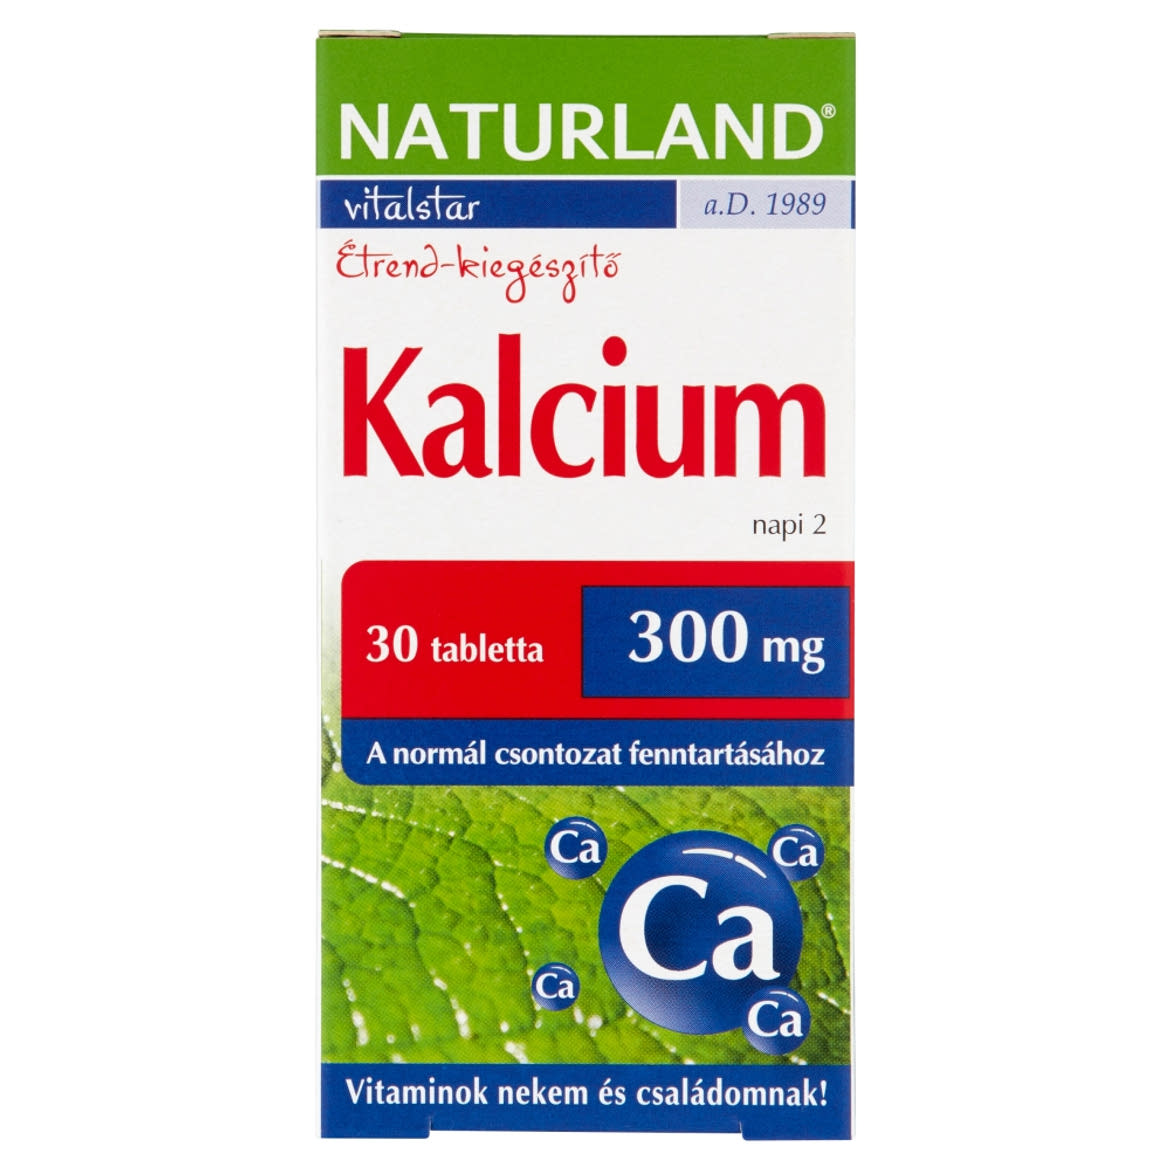 Naturland Vitalstar kalcium 300 mg étrend-kiegészítő tabletta